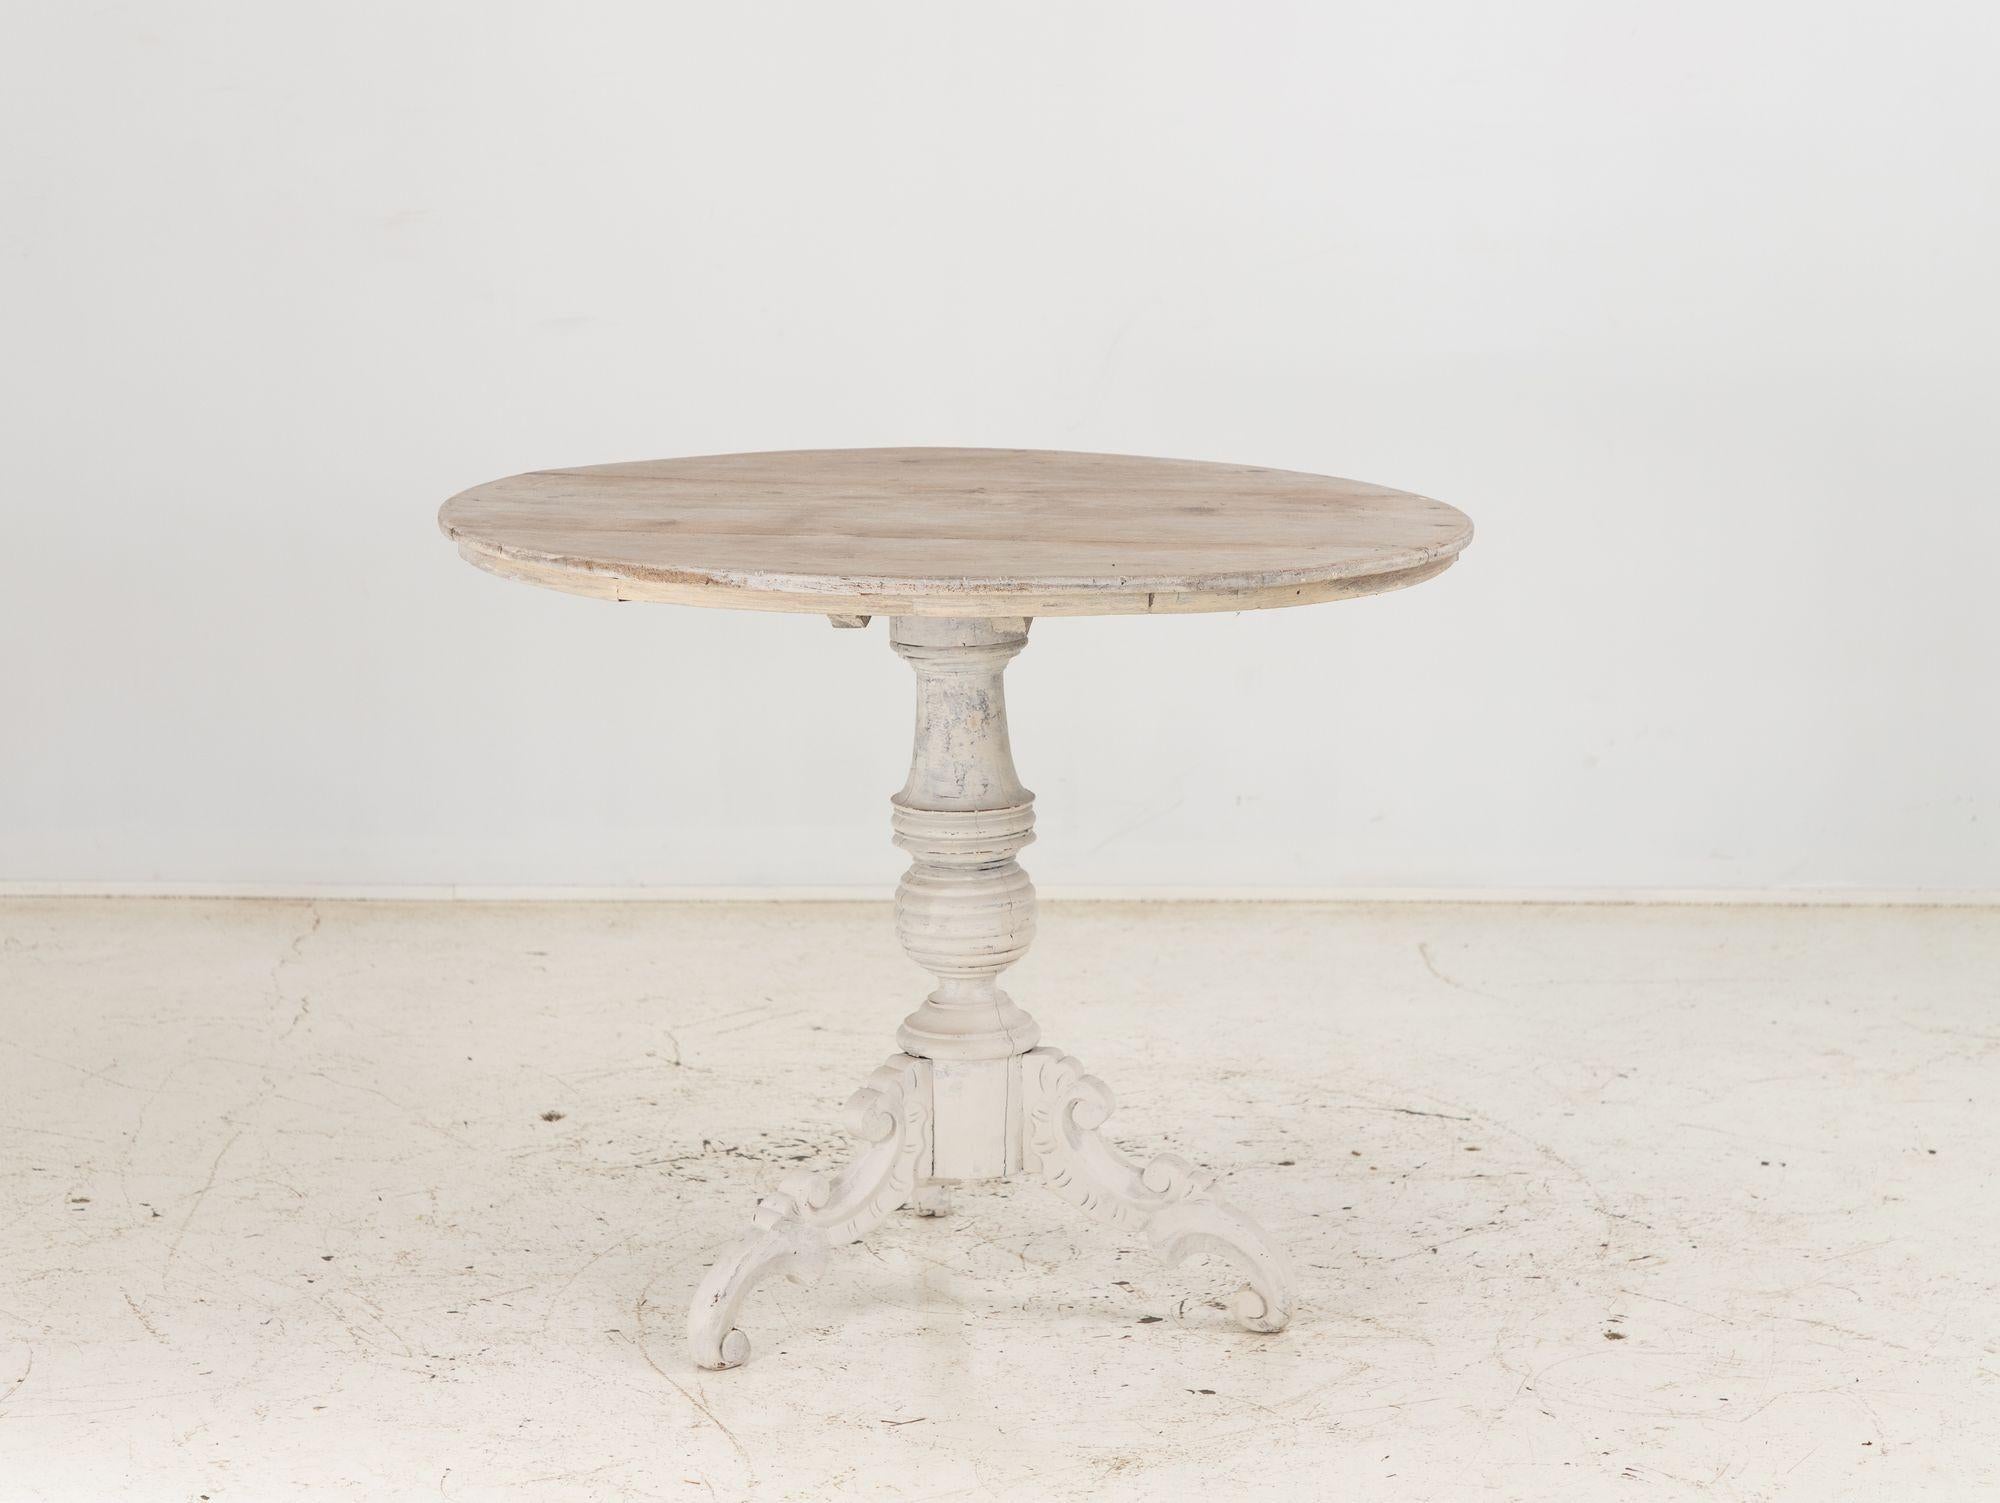 Der englische Sockeltisch aus dem späten 19. Jahrhundert, elegant in Grau lackiert, strahlt zeitlosen Charme und Raffinesse aus. Dieser mit viel Liebe zum Detail gefertigte Tisch verfügt über einen zentralen Sockel, der für eine ansprechende Optik